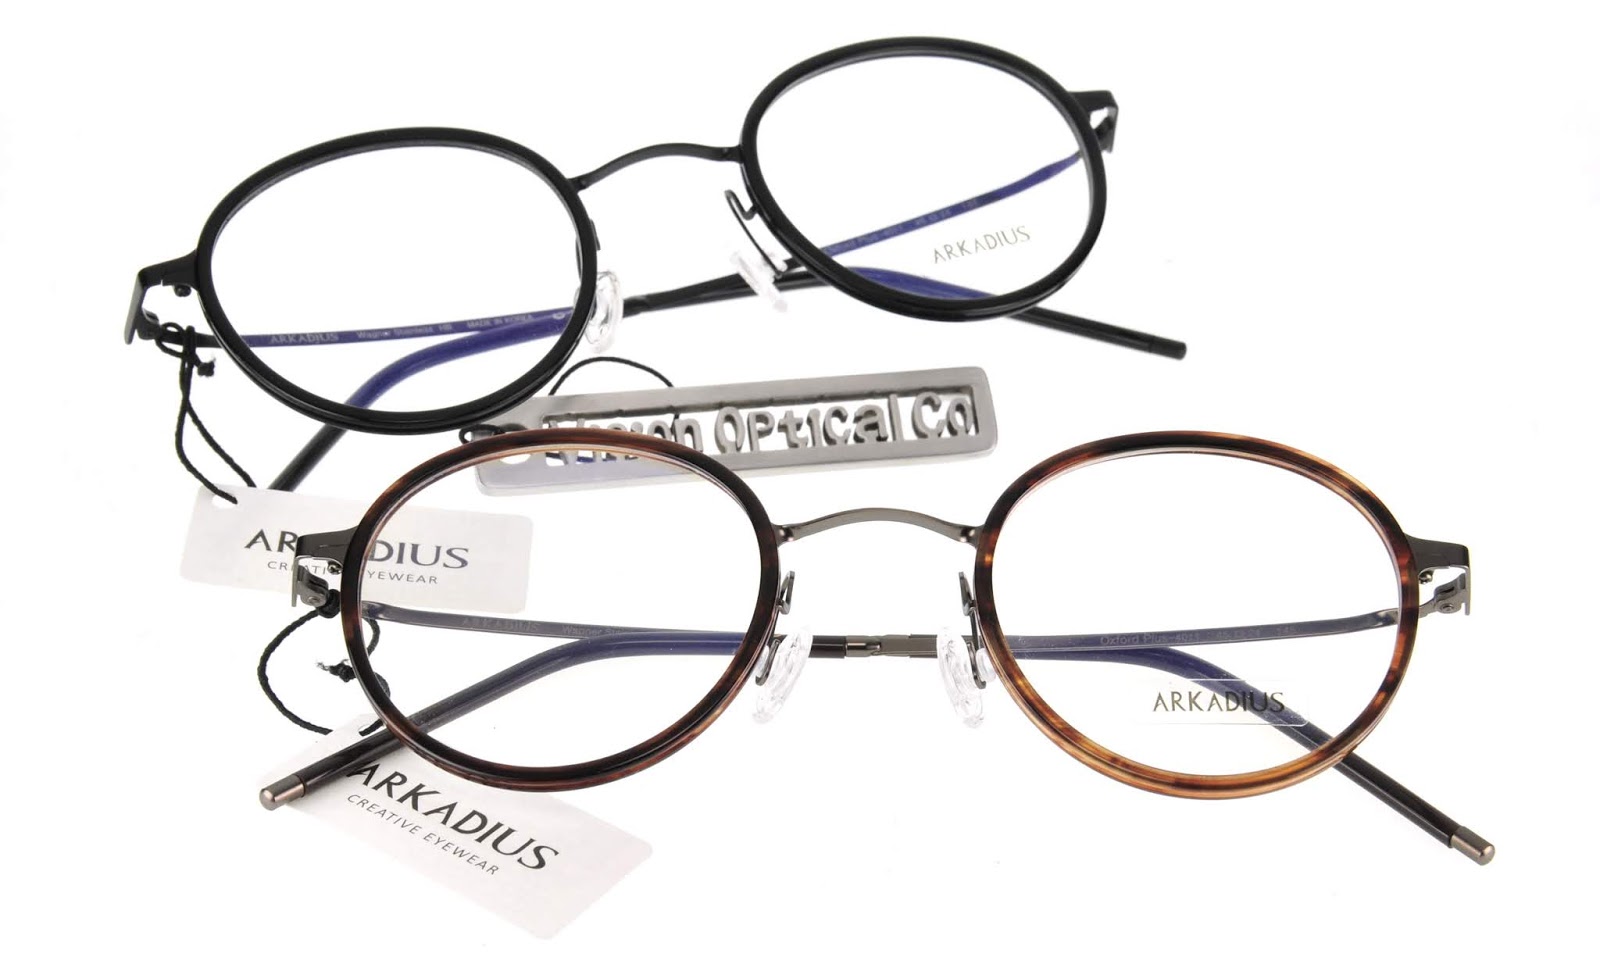 精明眼鏡公司 韓國眼鏡arkadius隨意簡約系列眼鏡